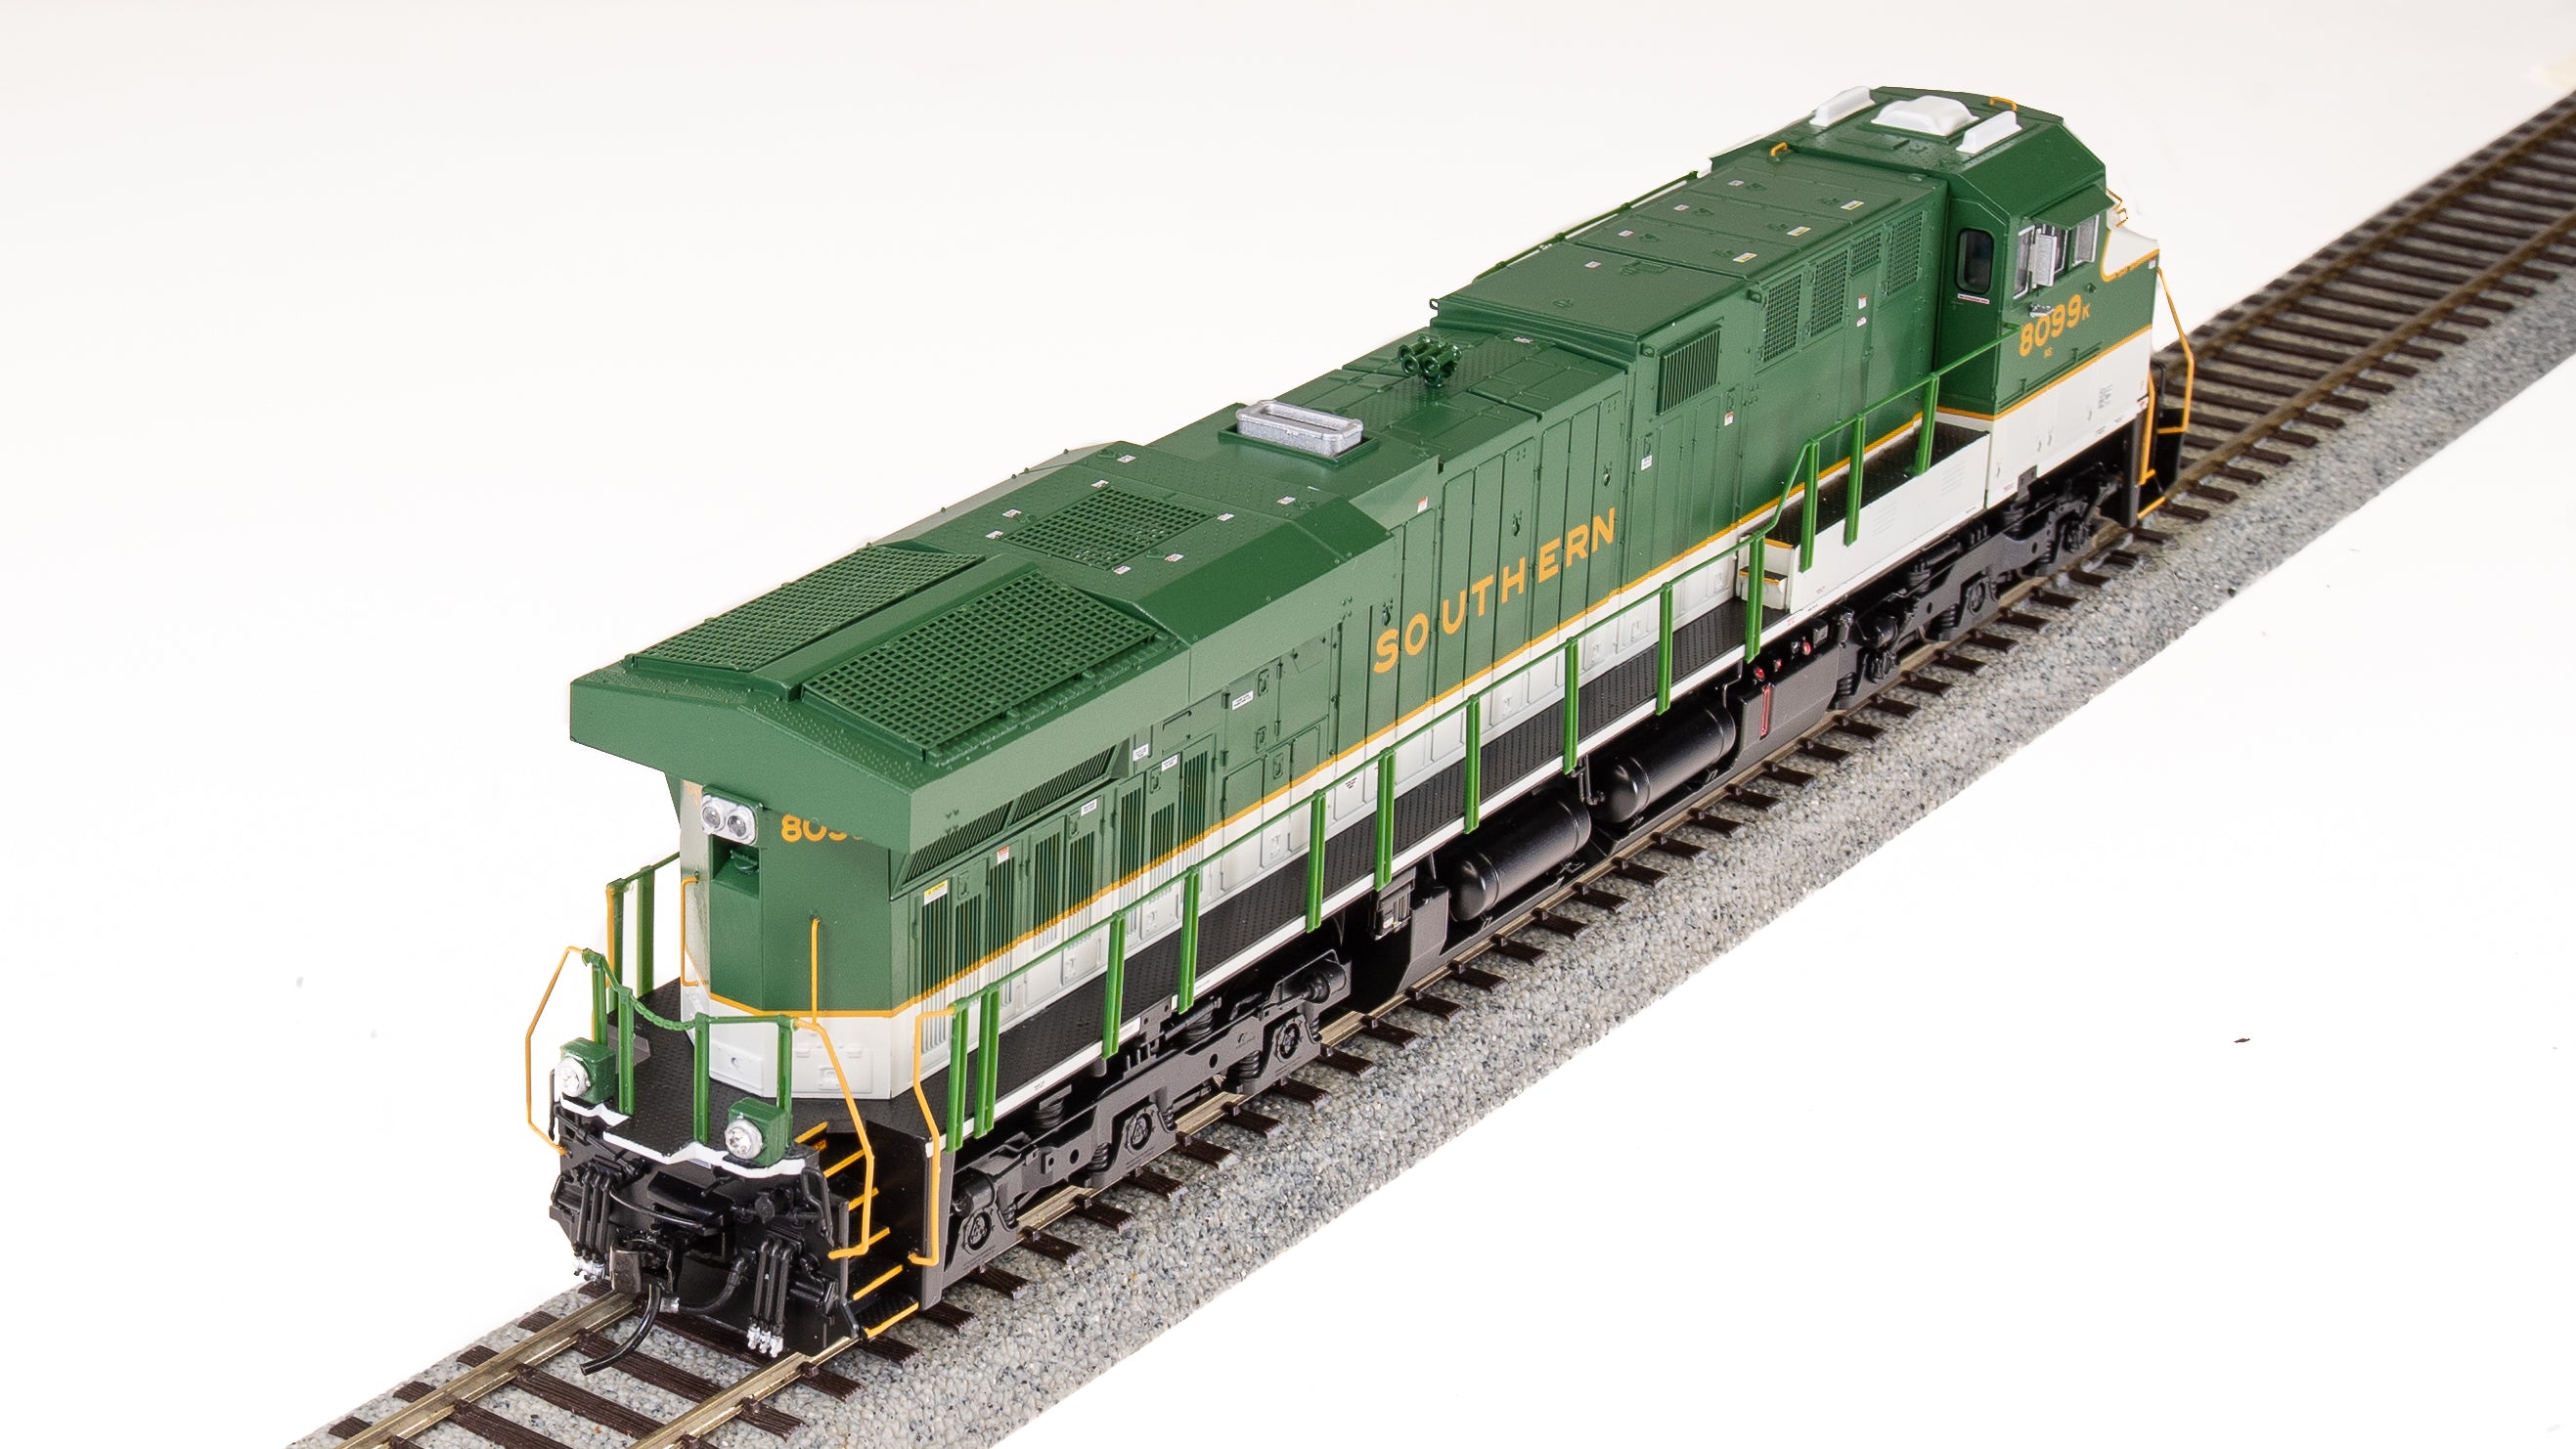 7180 GE ES44AC, NS #8099, Southern Railway Heritage Unit, Paragon4 Sound/DC/DCC, Smoke, HO Default Title